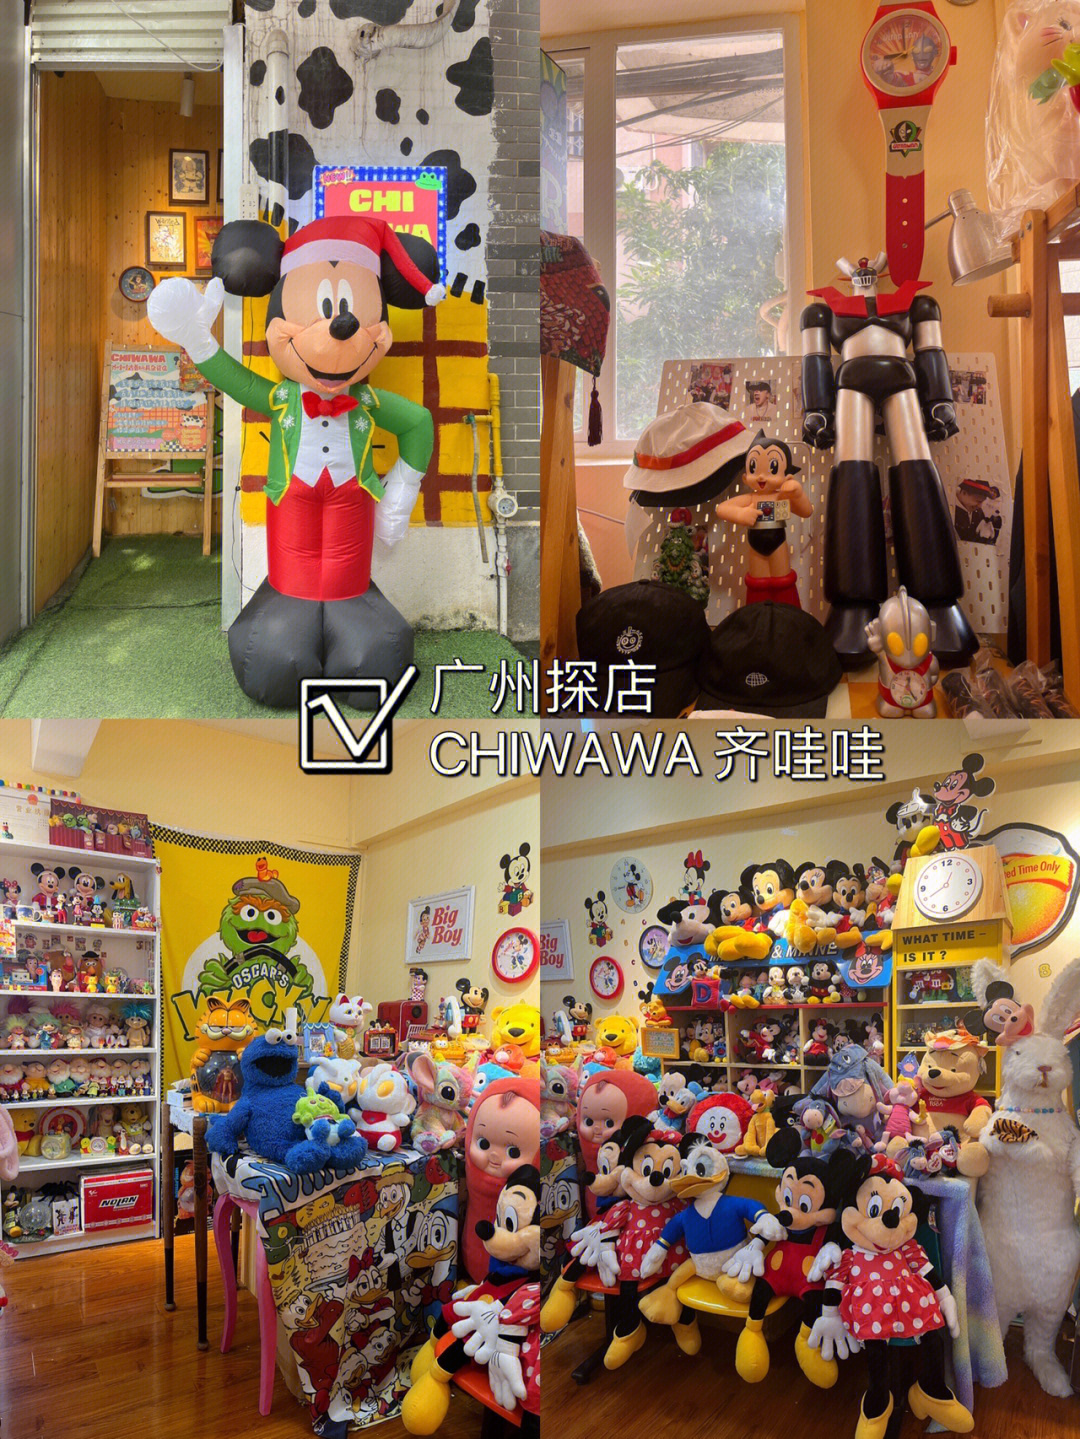 广州探店欢迎来到米奇妙妙屋童趣中古玩具